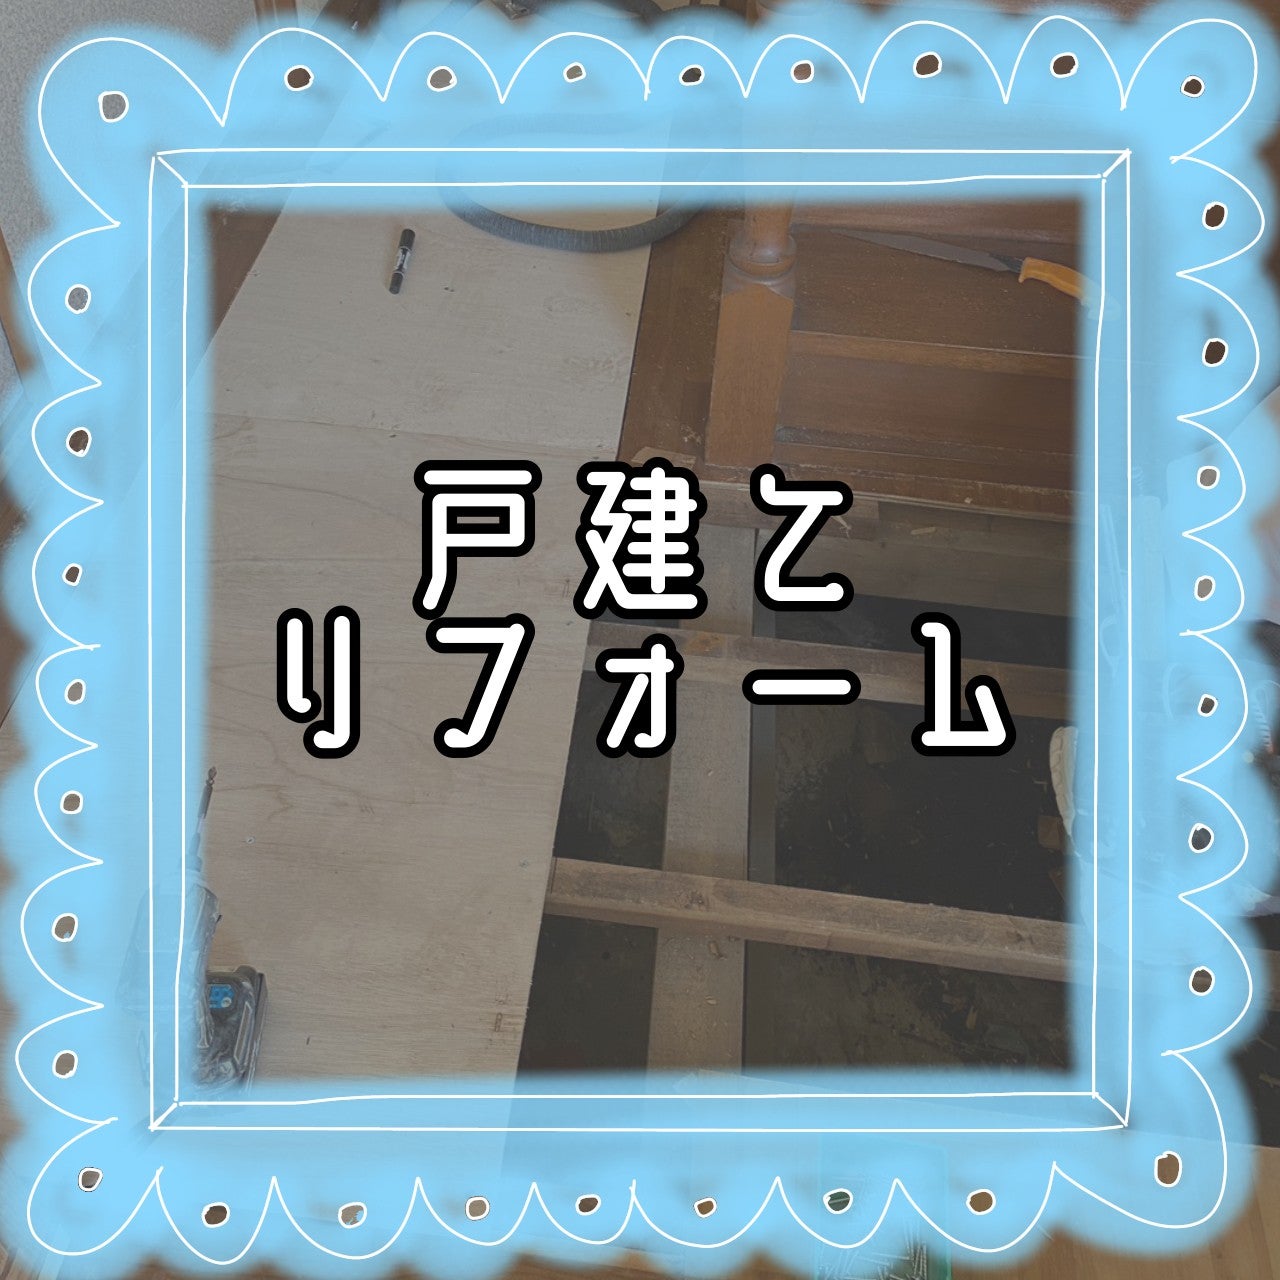 【戸建てリフォーム】廊下の改修